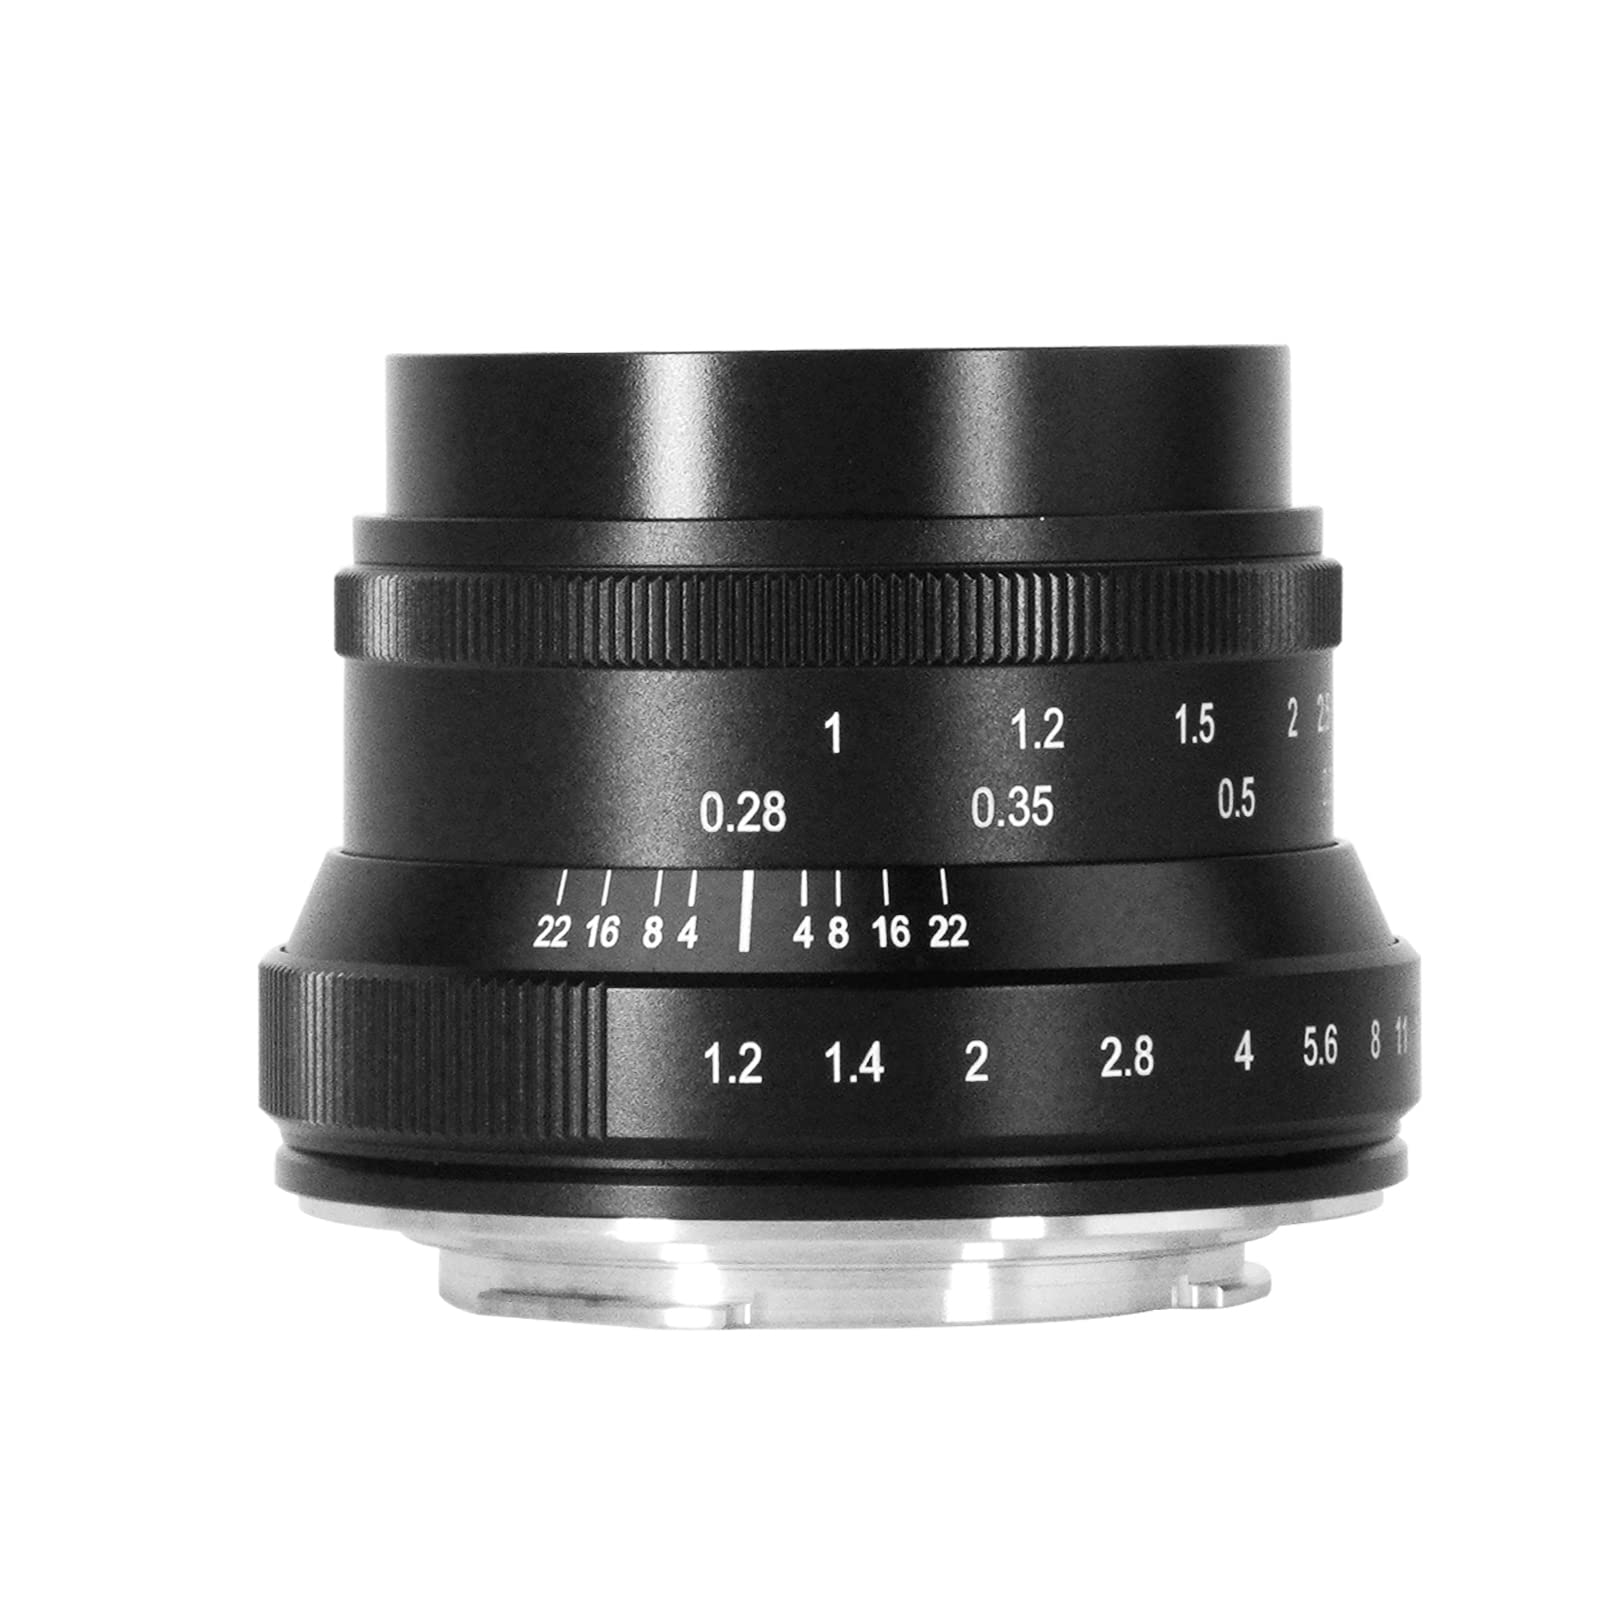 7artisans 35mm f1.2 Mark II APS-C Geklickte Festbrennweite mit größerer Blende Passend für Fujifilm Kompakte Spiegellose Kameras Für Fuji X-A1 X-A10 X-A2 X-A3 X-M1